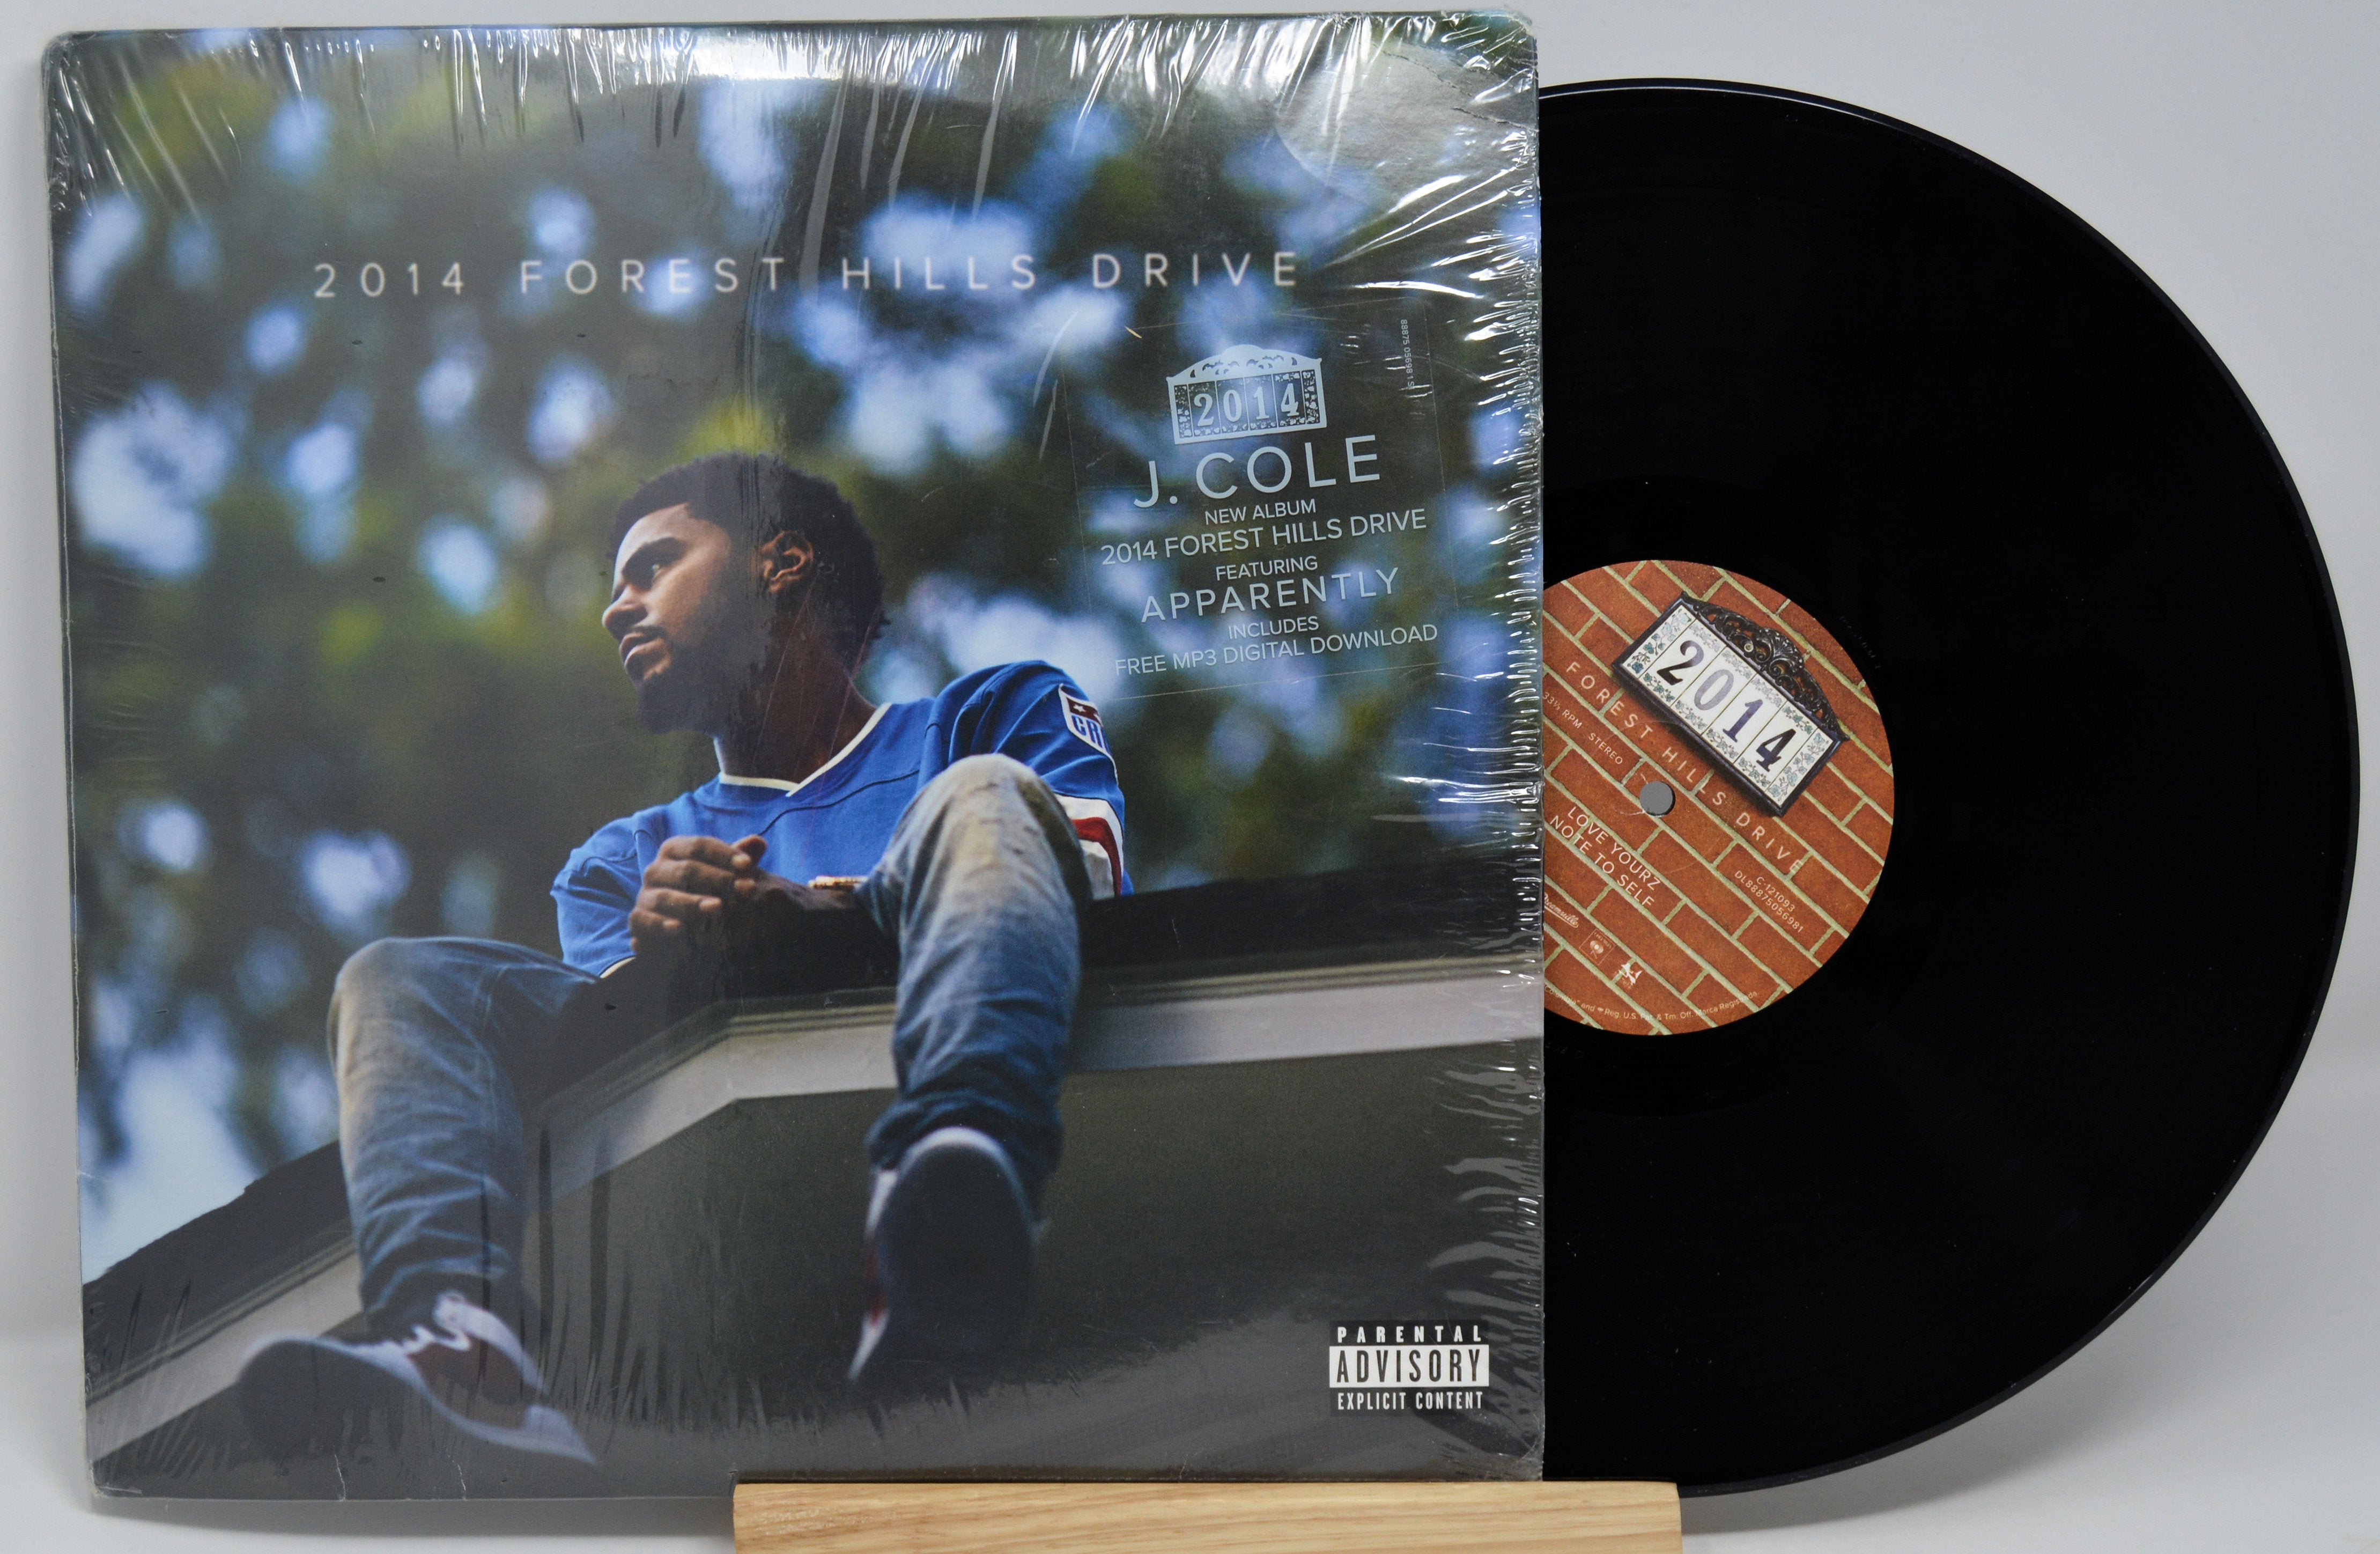 J Cole - 2014 Forest Hills Drive, Vinyl Record Album LP, Rocnation 